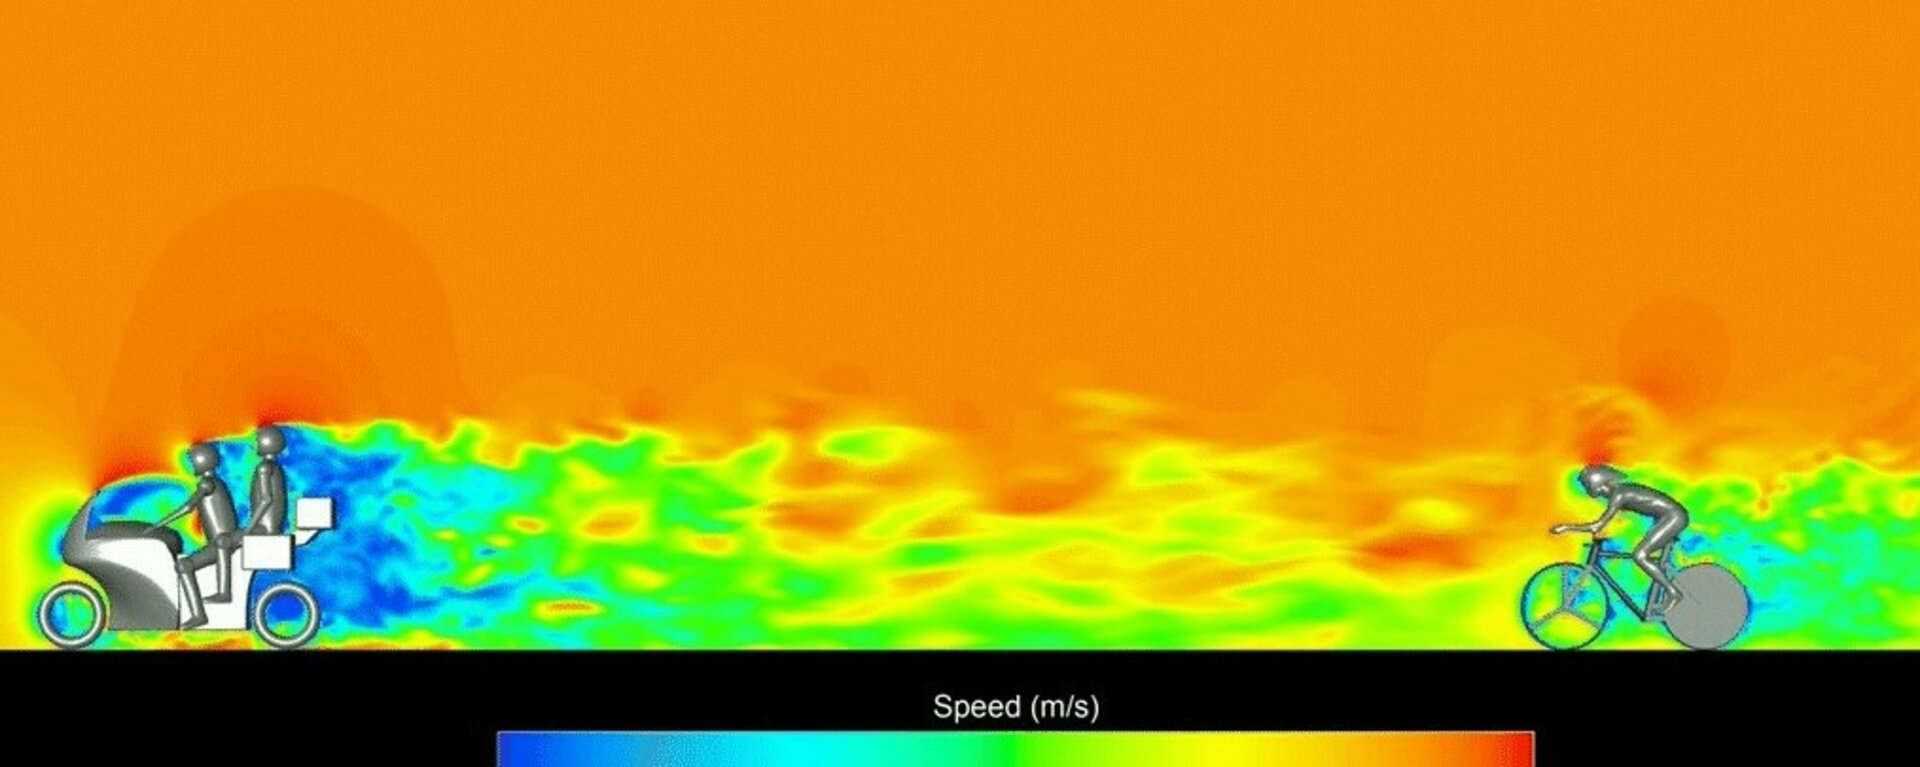 Computersimulatie van een wielrenner op 10 meter afstand van een motorrijder. De groene en gele kleuren vóór de renner laten zien dat de luchtsnelheid hier aanzienlijk lager is dan vóór de motor. Foto: Bert Blocken